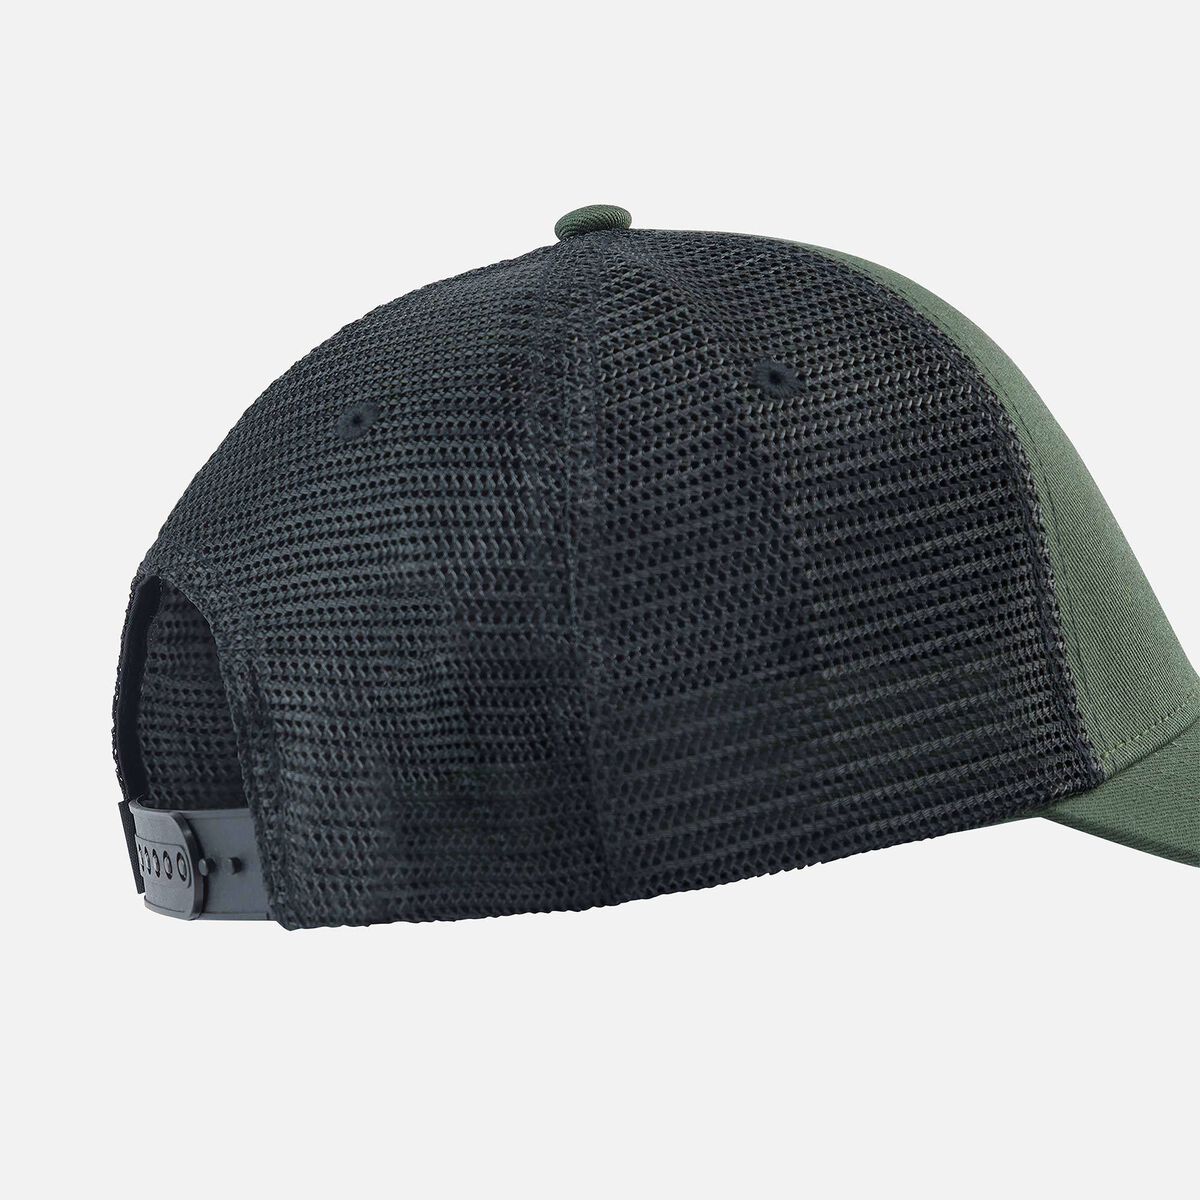 Unisex corporate mesh cap